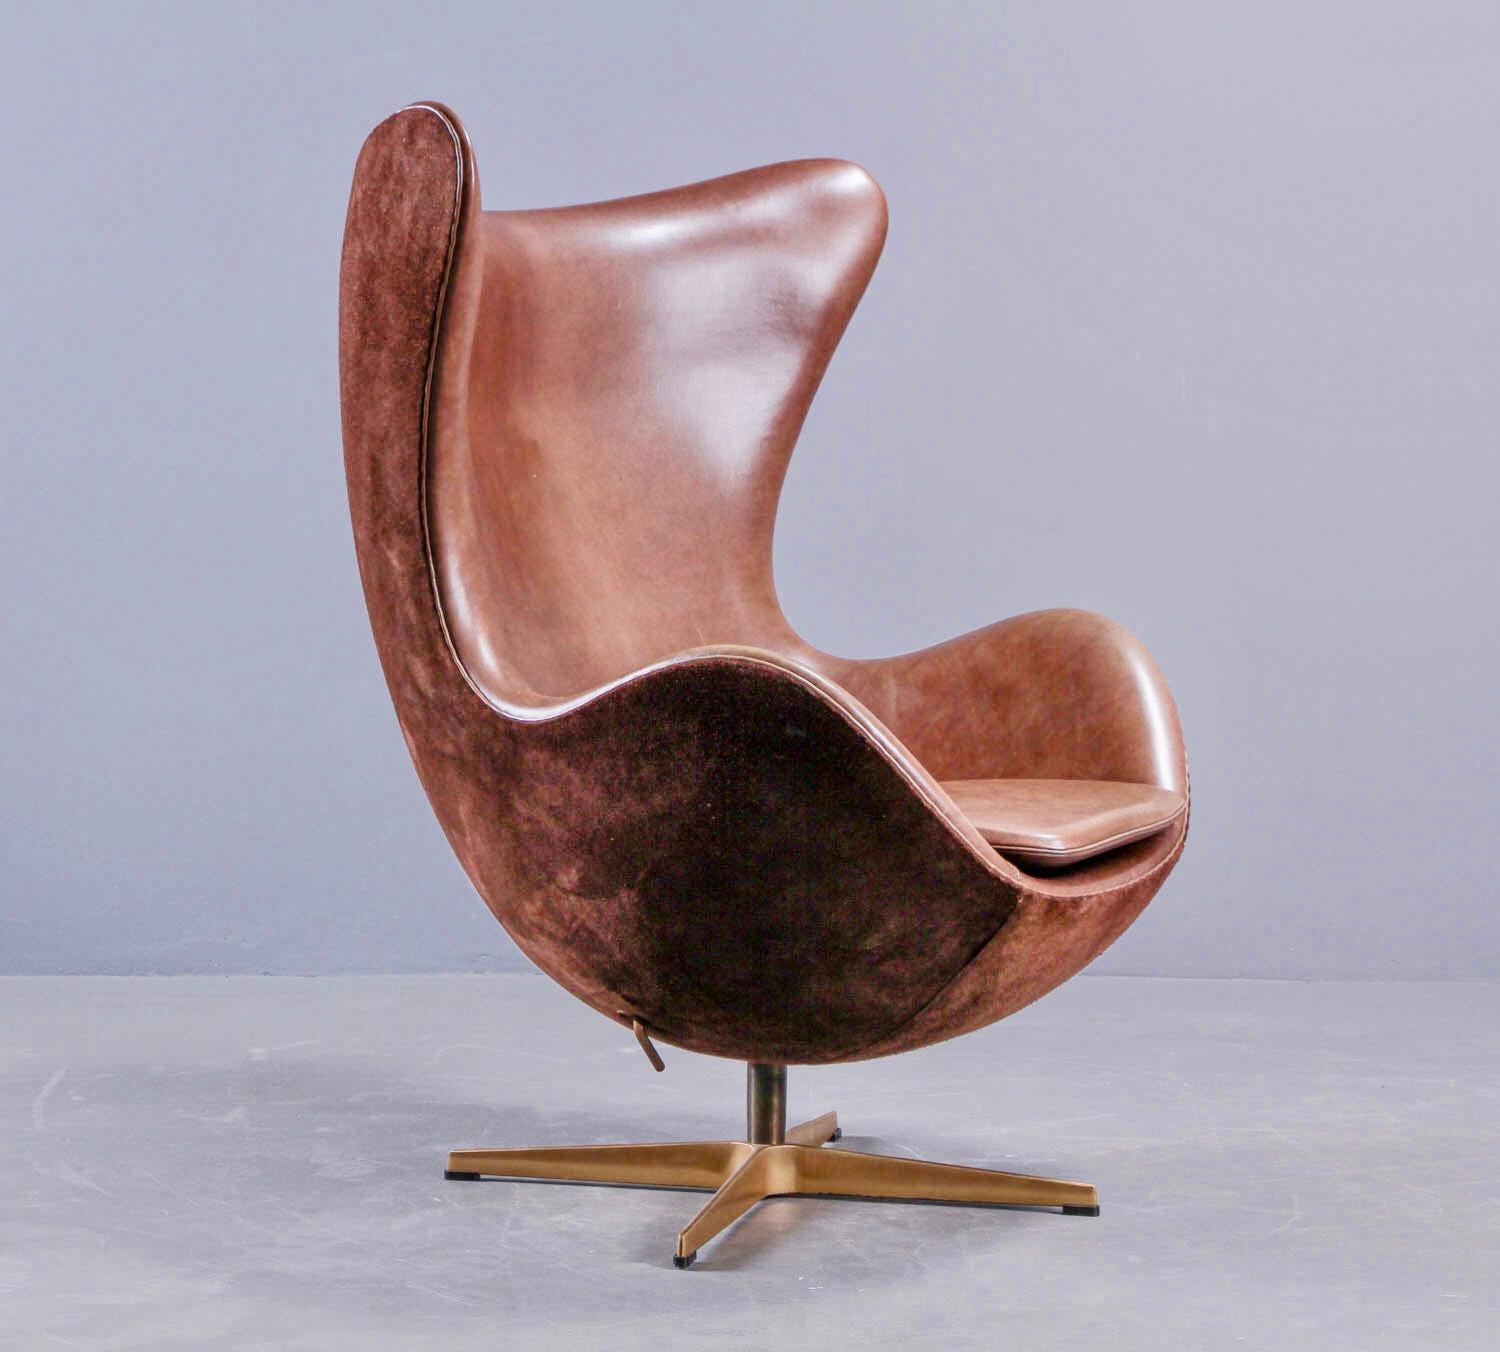 Arne Jacobsen 'Golden Egg Chair' von Fritz Hansen in Dänemark, nummerierte Ausgabe (Skandinavische Moderne)